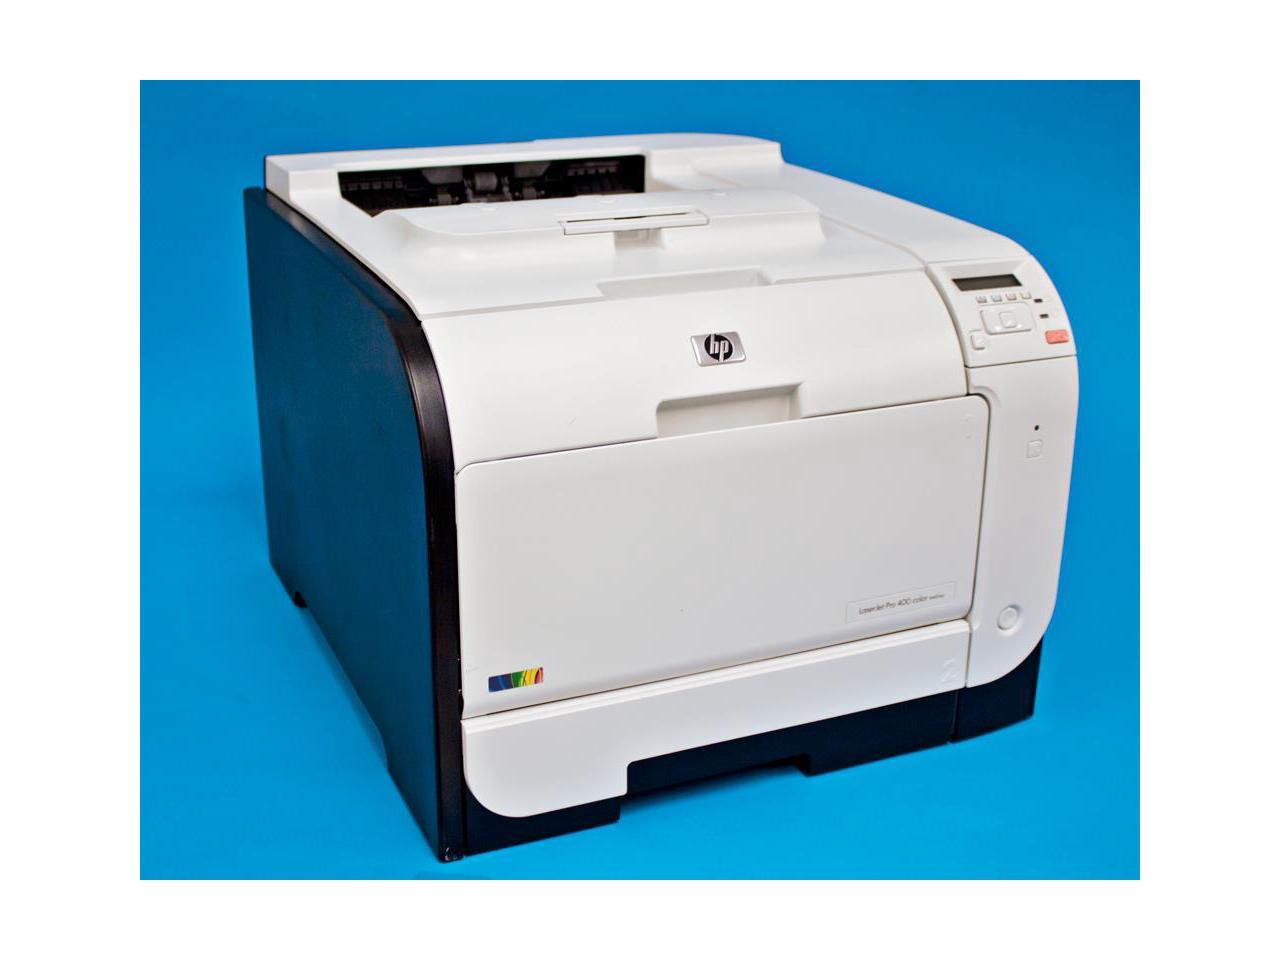 Refurbished Hp Laserjet Pro 400 Color Printer M451dn Ce957a 6267